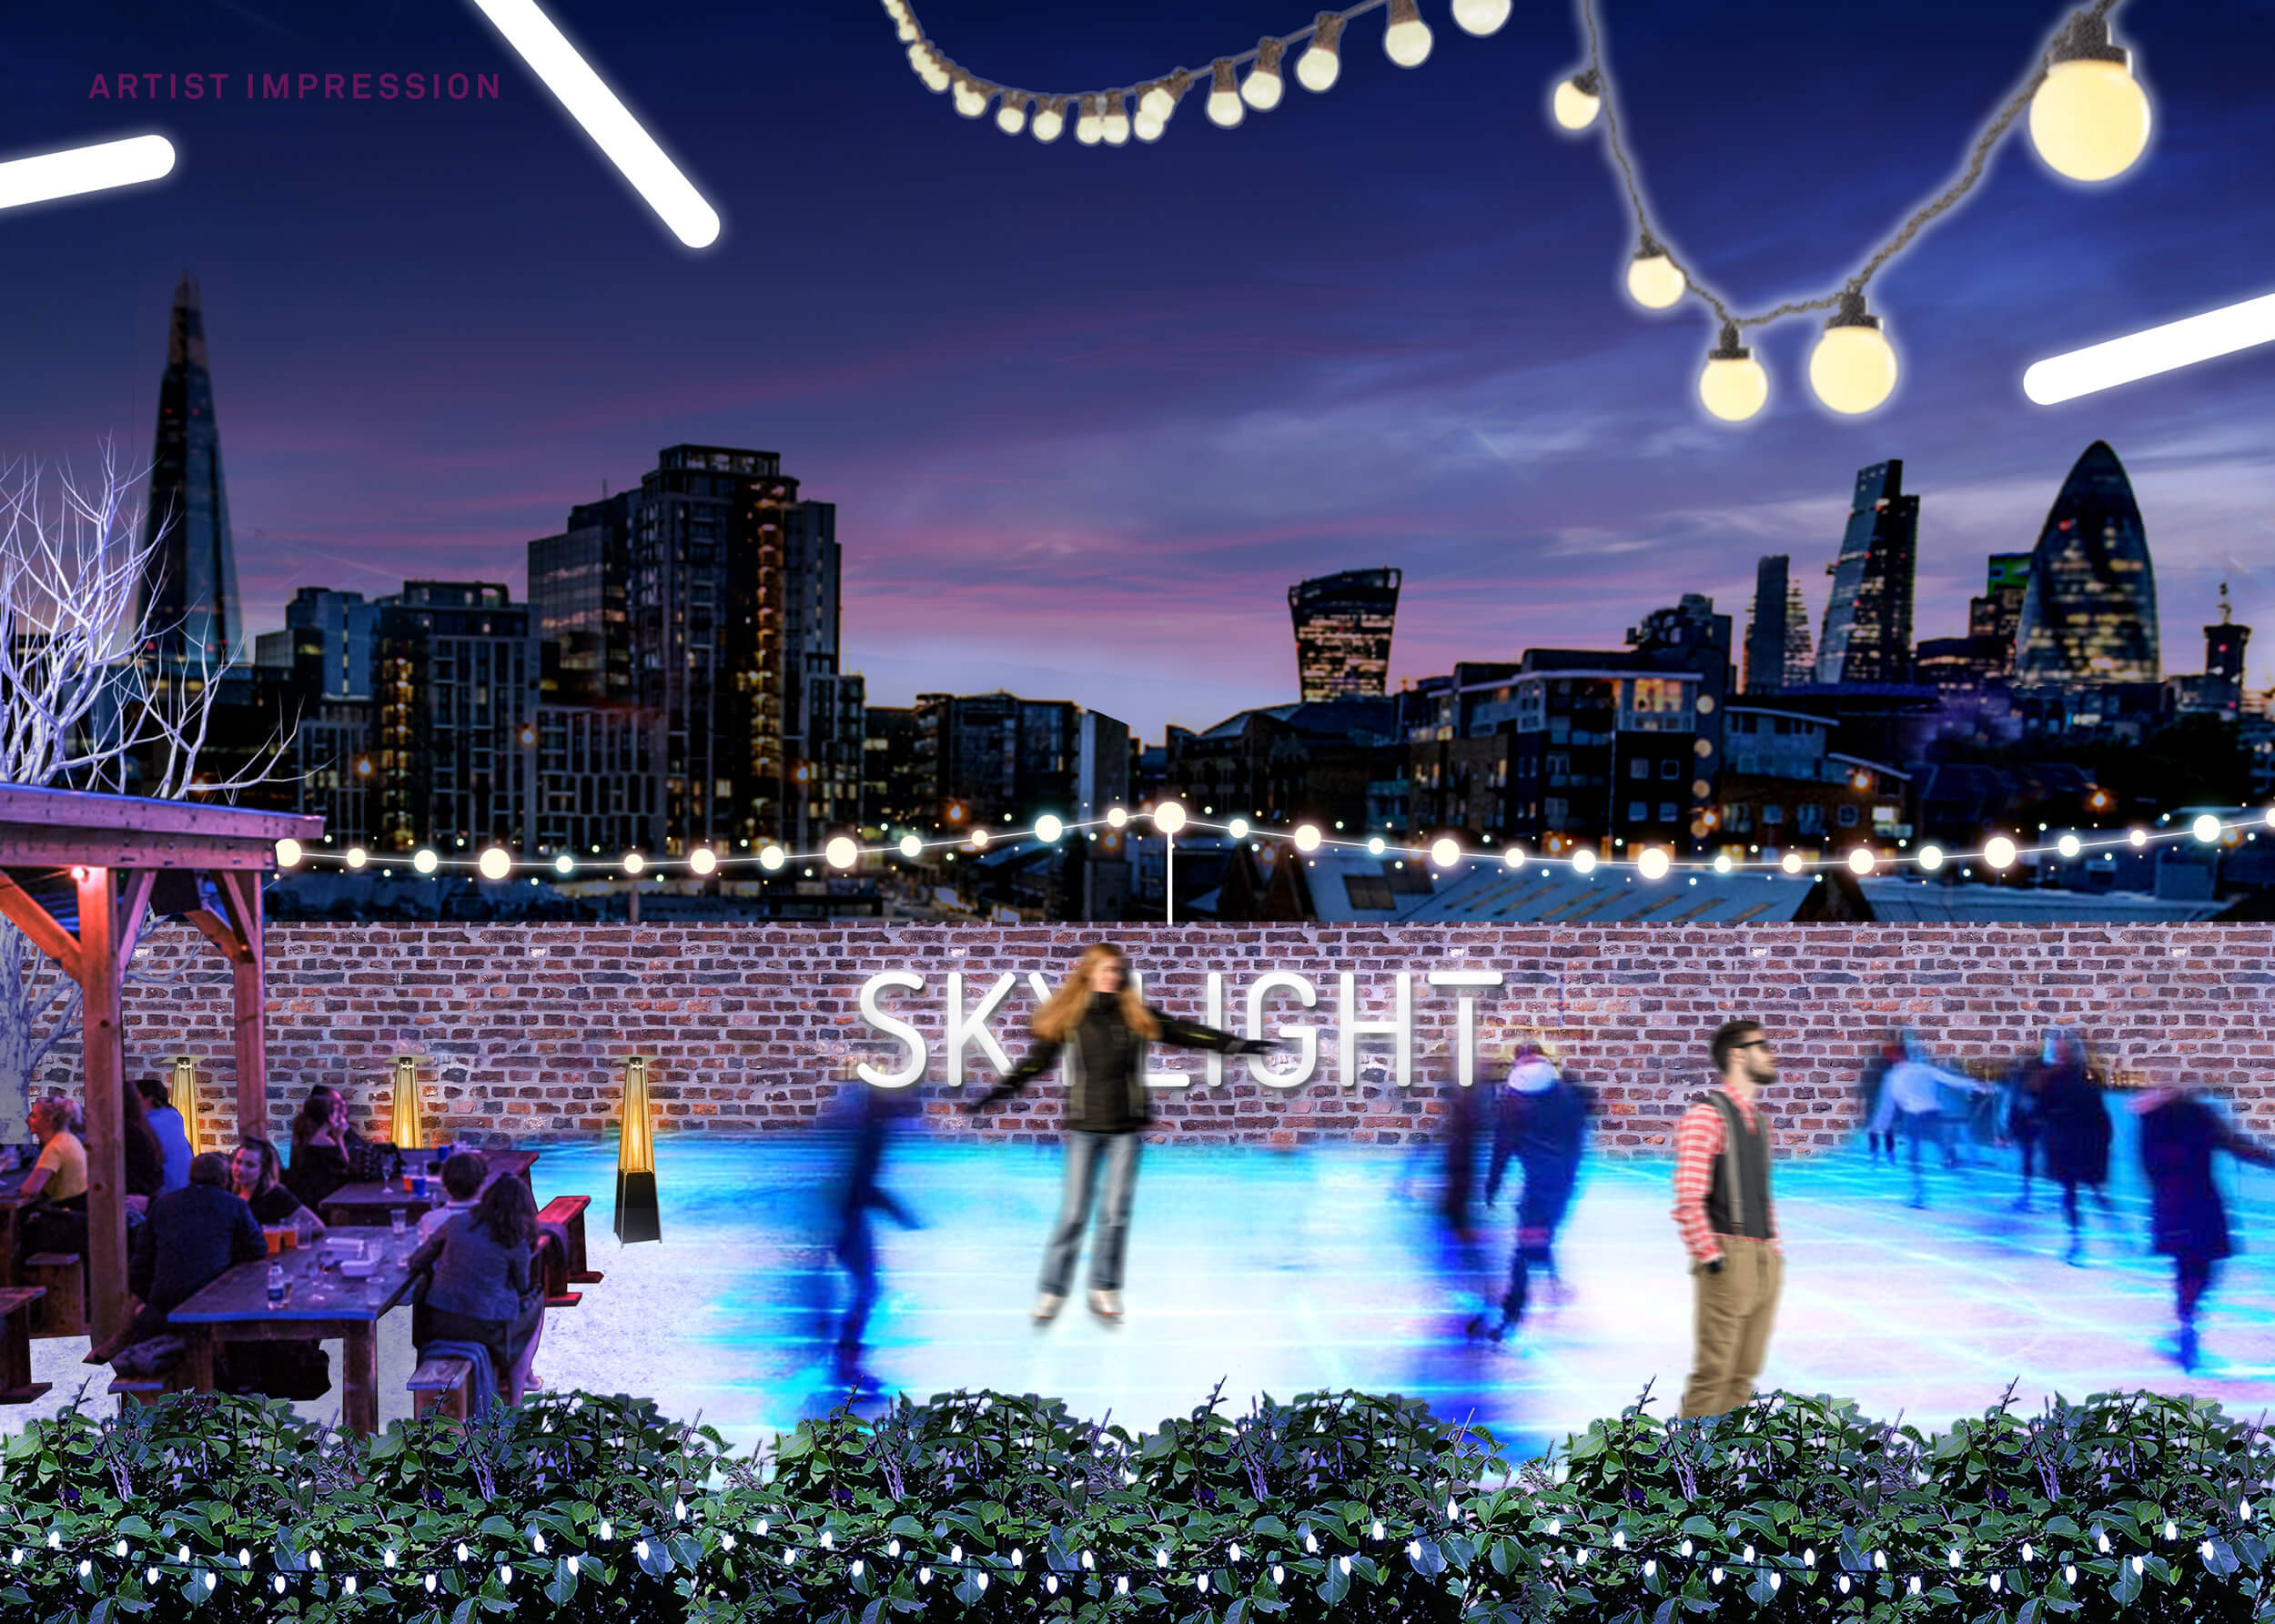 Skating at Skylight London